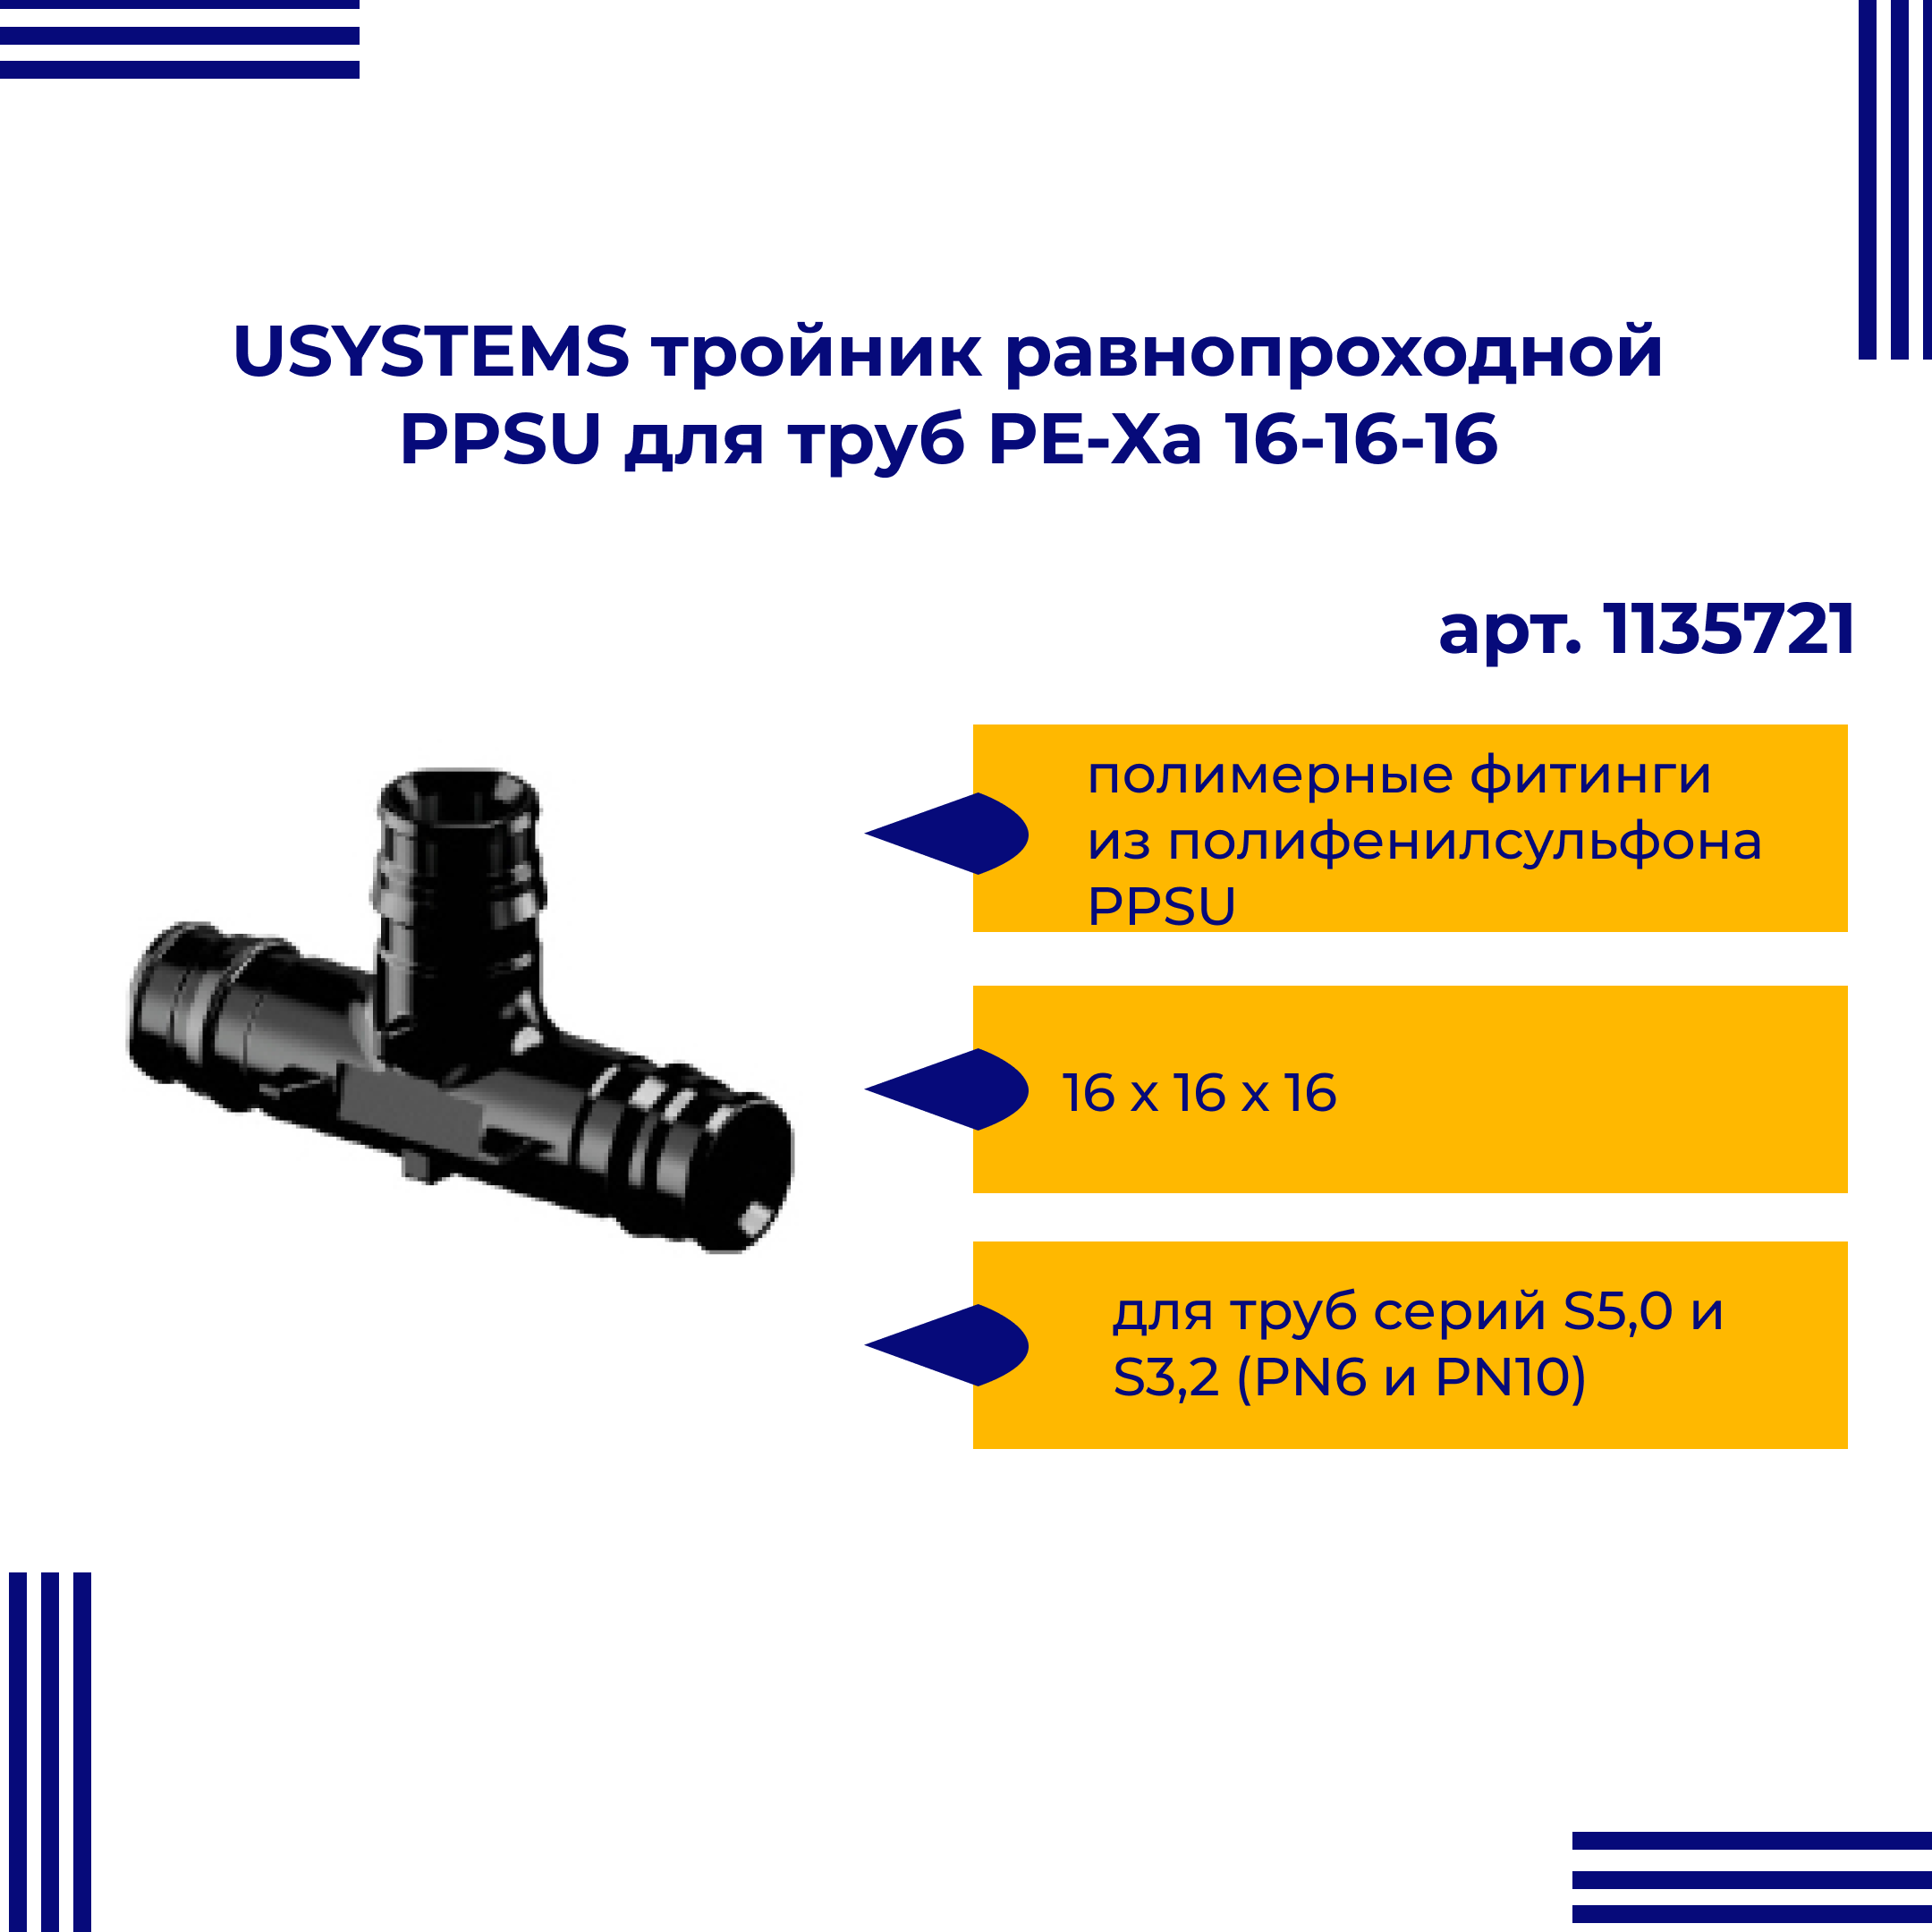 Тройник PPSU USYSTEMS равнопроходной для труб PE-Xa 16-16-16 1135721 тройник px rehau 11600321001 20 х 20 х 20 мм равнопроходной